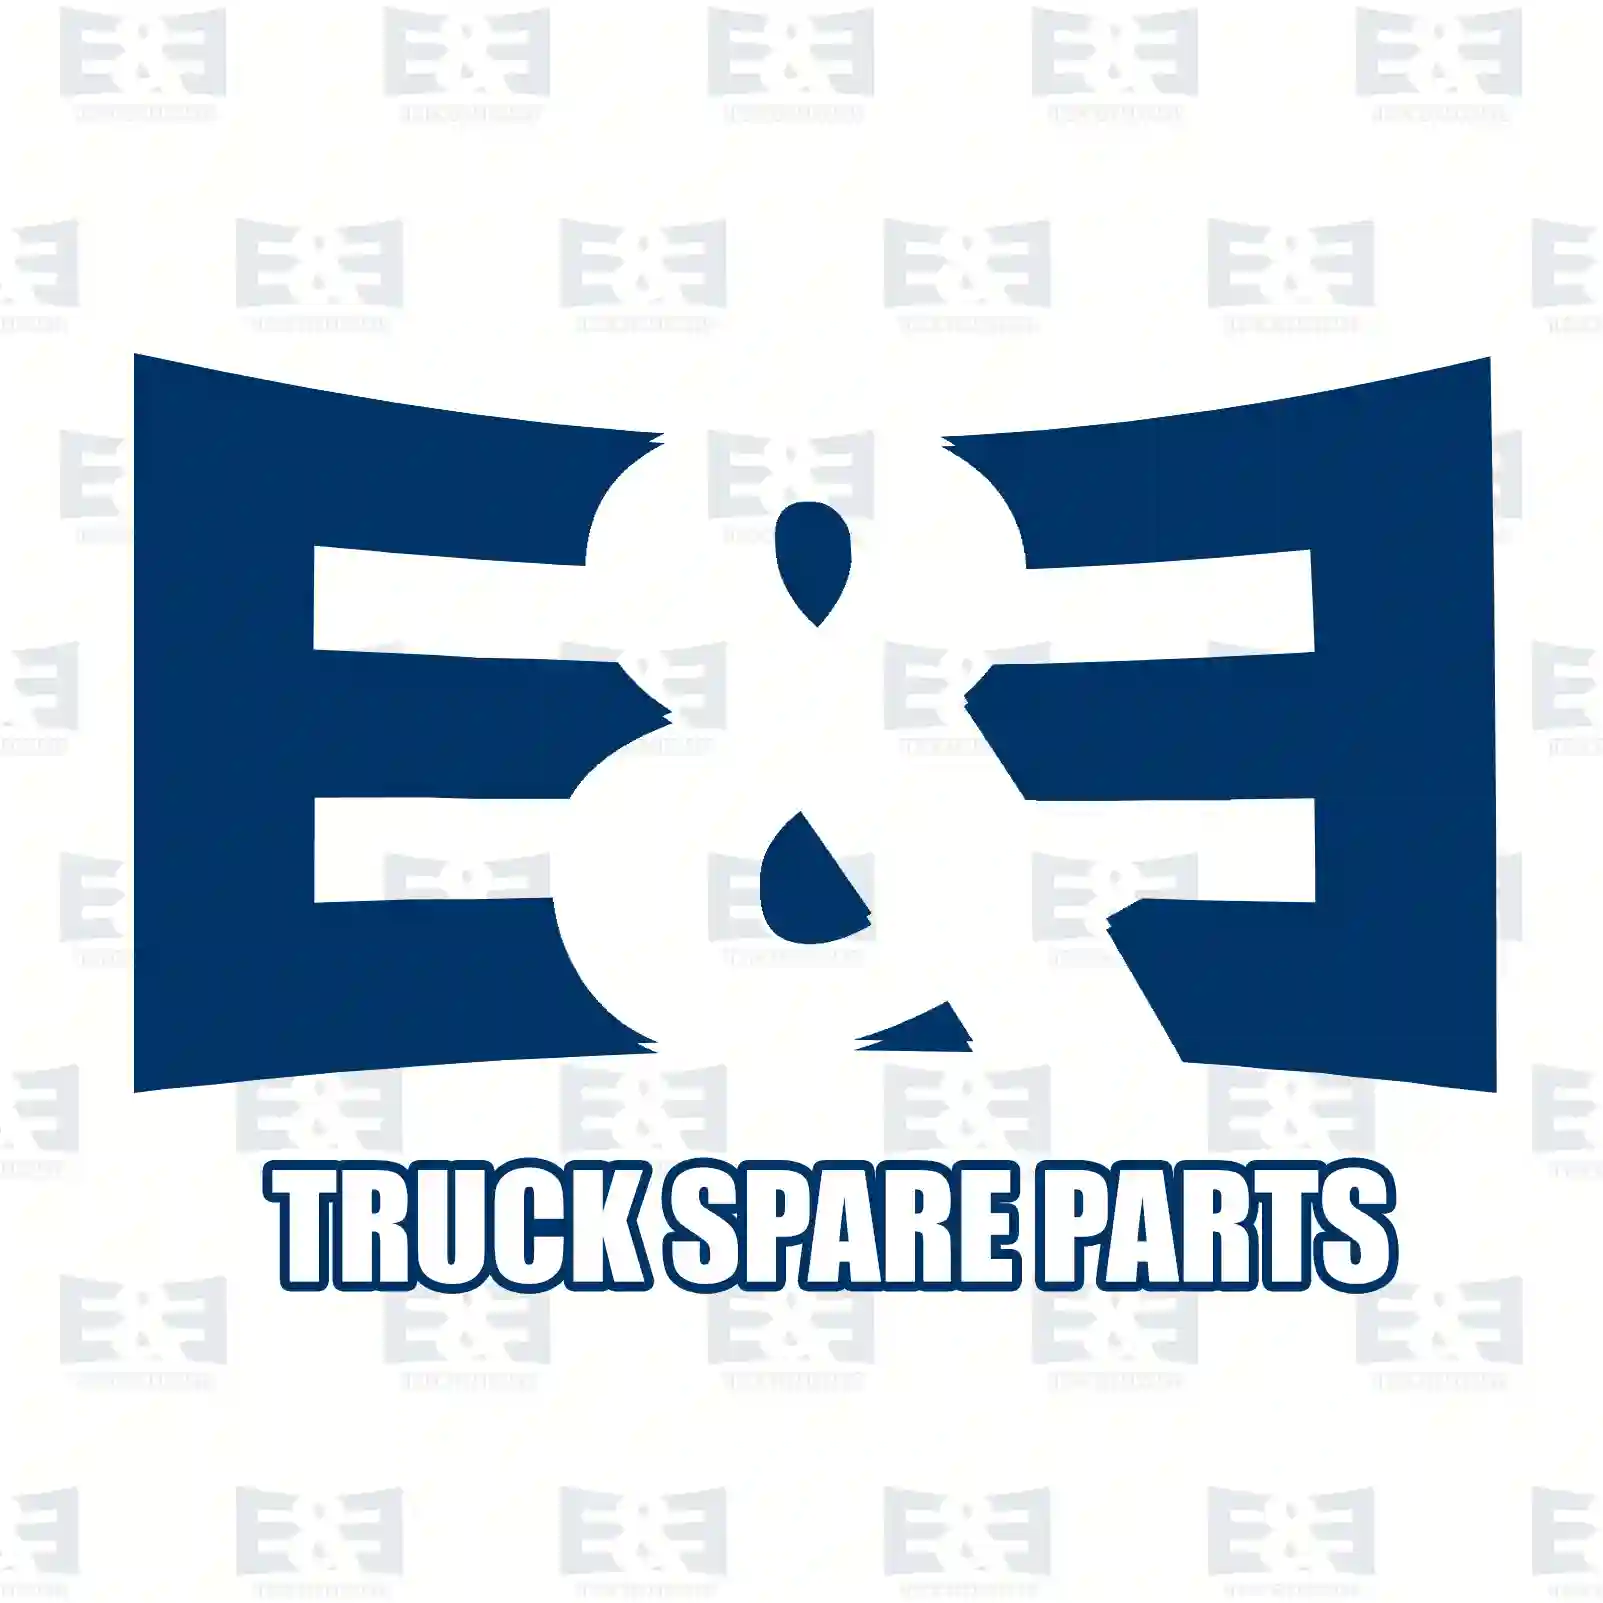 Timing belt kit, 2E2203956, 30758271, 074198119B, 074198119G, 074198119P ||  2E2203956 E&E Truck Spare Parts | Truck Spare Parts, Auotomotive Spare Parts Timing belt kit, 2E2203956, 30758271, 074198119B, 074198119G, 074198119P ||  2E2203956 E&E Truck Spare Parts | Truck Spare Parts, Auotomotive Spare Parts